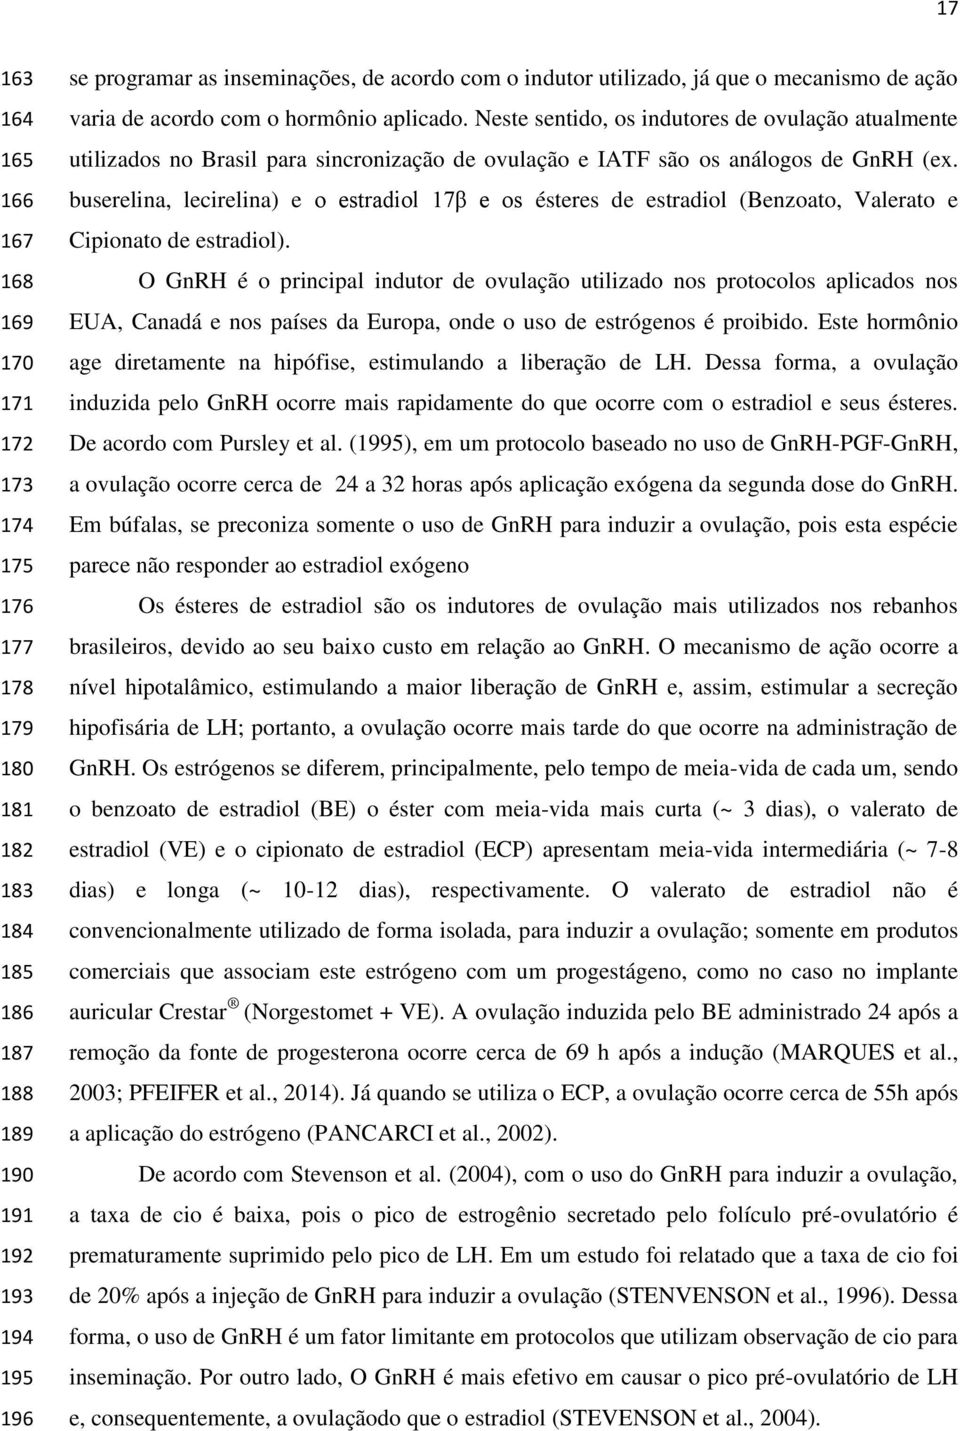 Neste sentido, os indutores de ovulação atualmente utilizados no Brasil para sincronização de ovulação e IATF são os análogos de GnRH (ex.